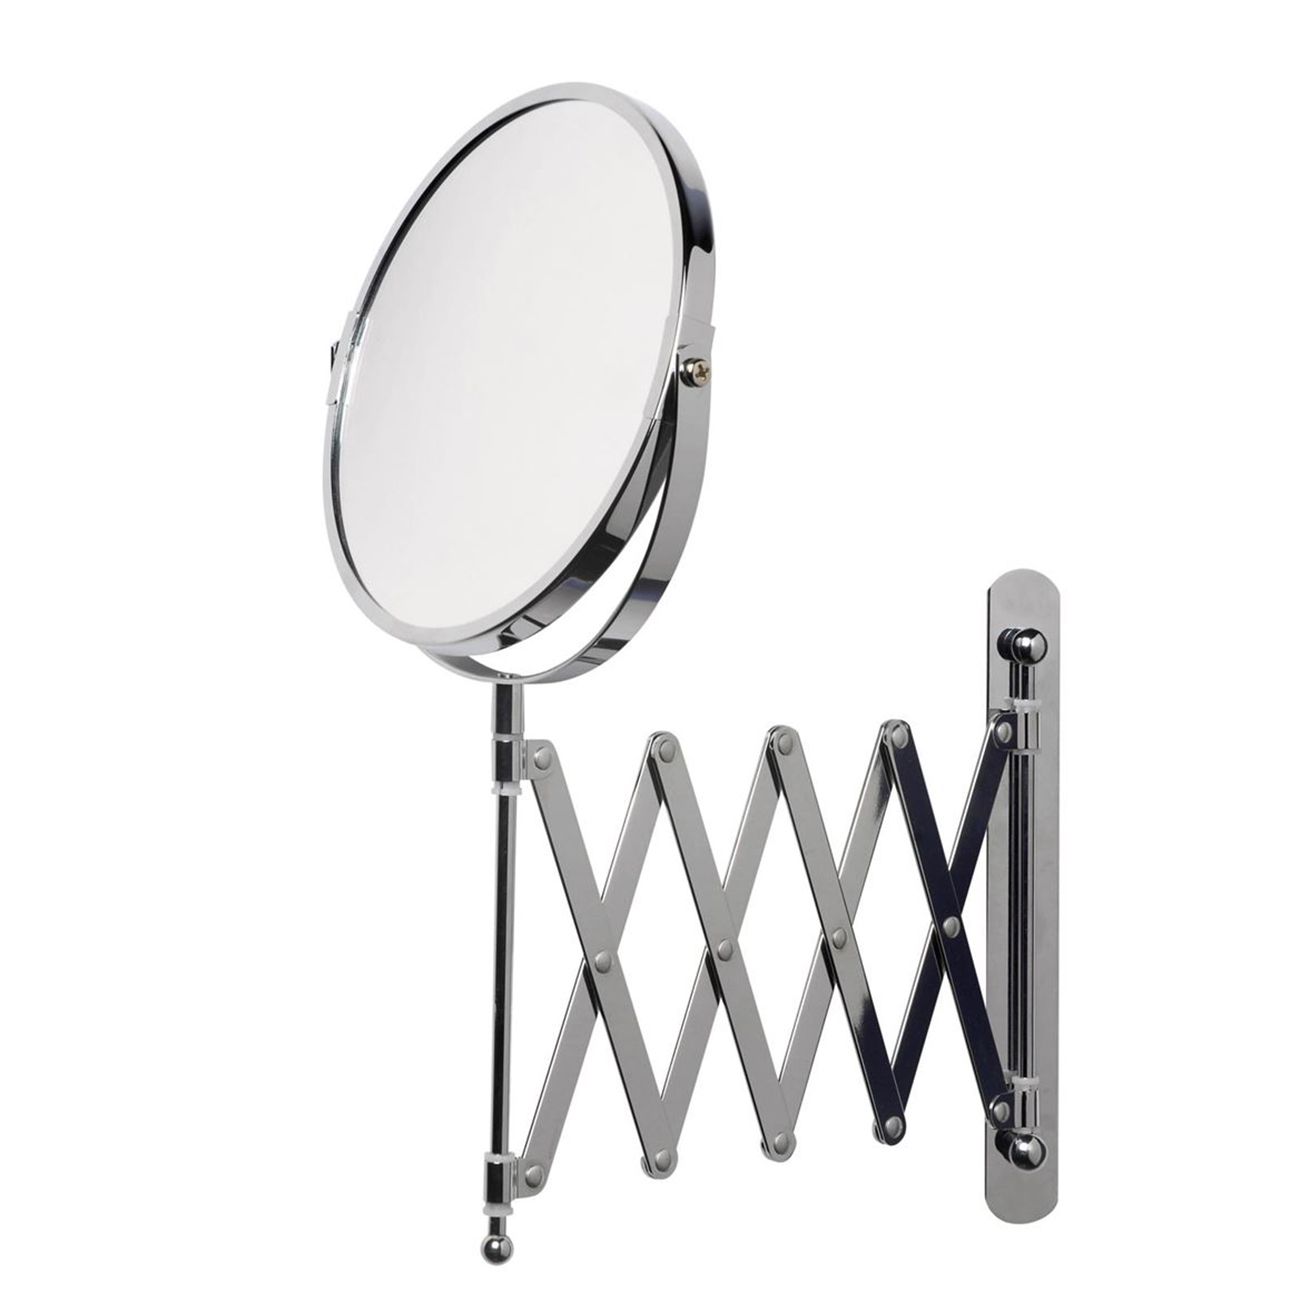 diámetro de espejo 17 cm cuidado y limpieza facial Espejo cosmético axentia rotativo de 360° depilación ajustable Espejo de aumento 3x para maquillaje Espejo de doble cara afeitado 